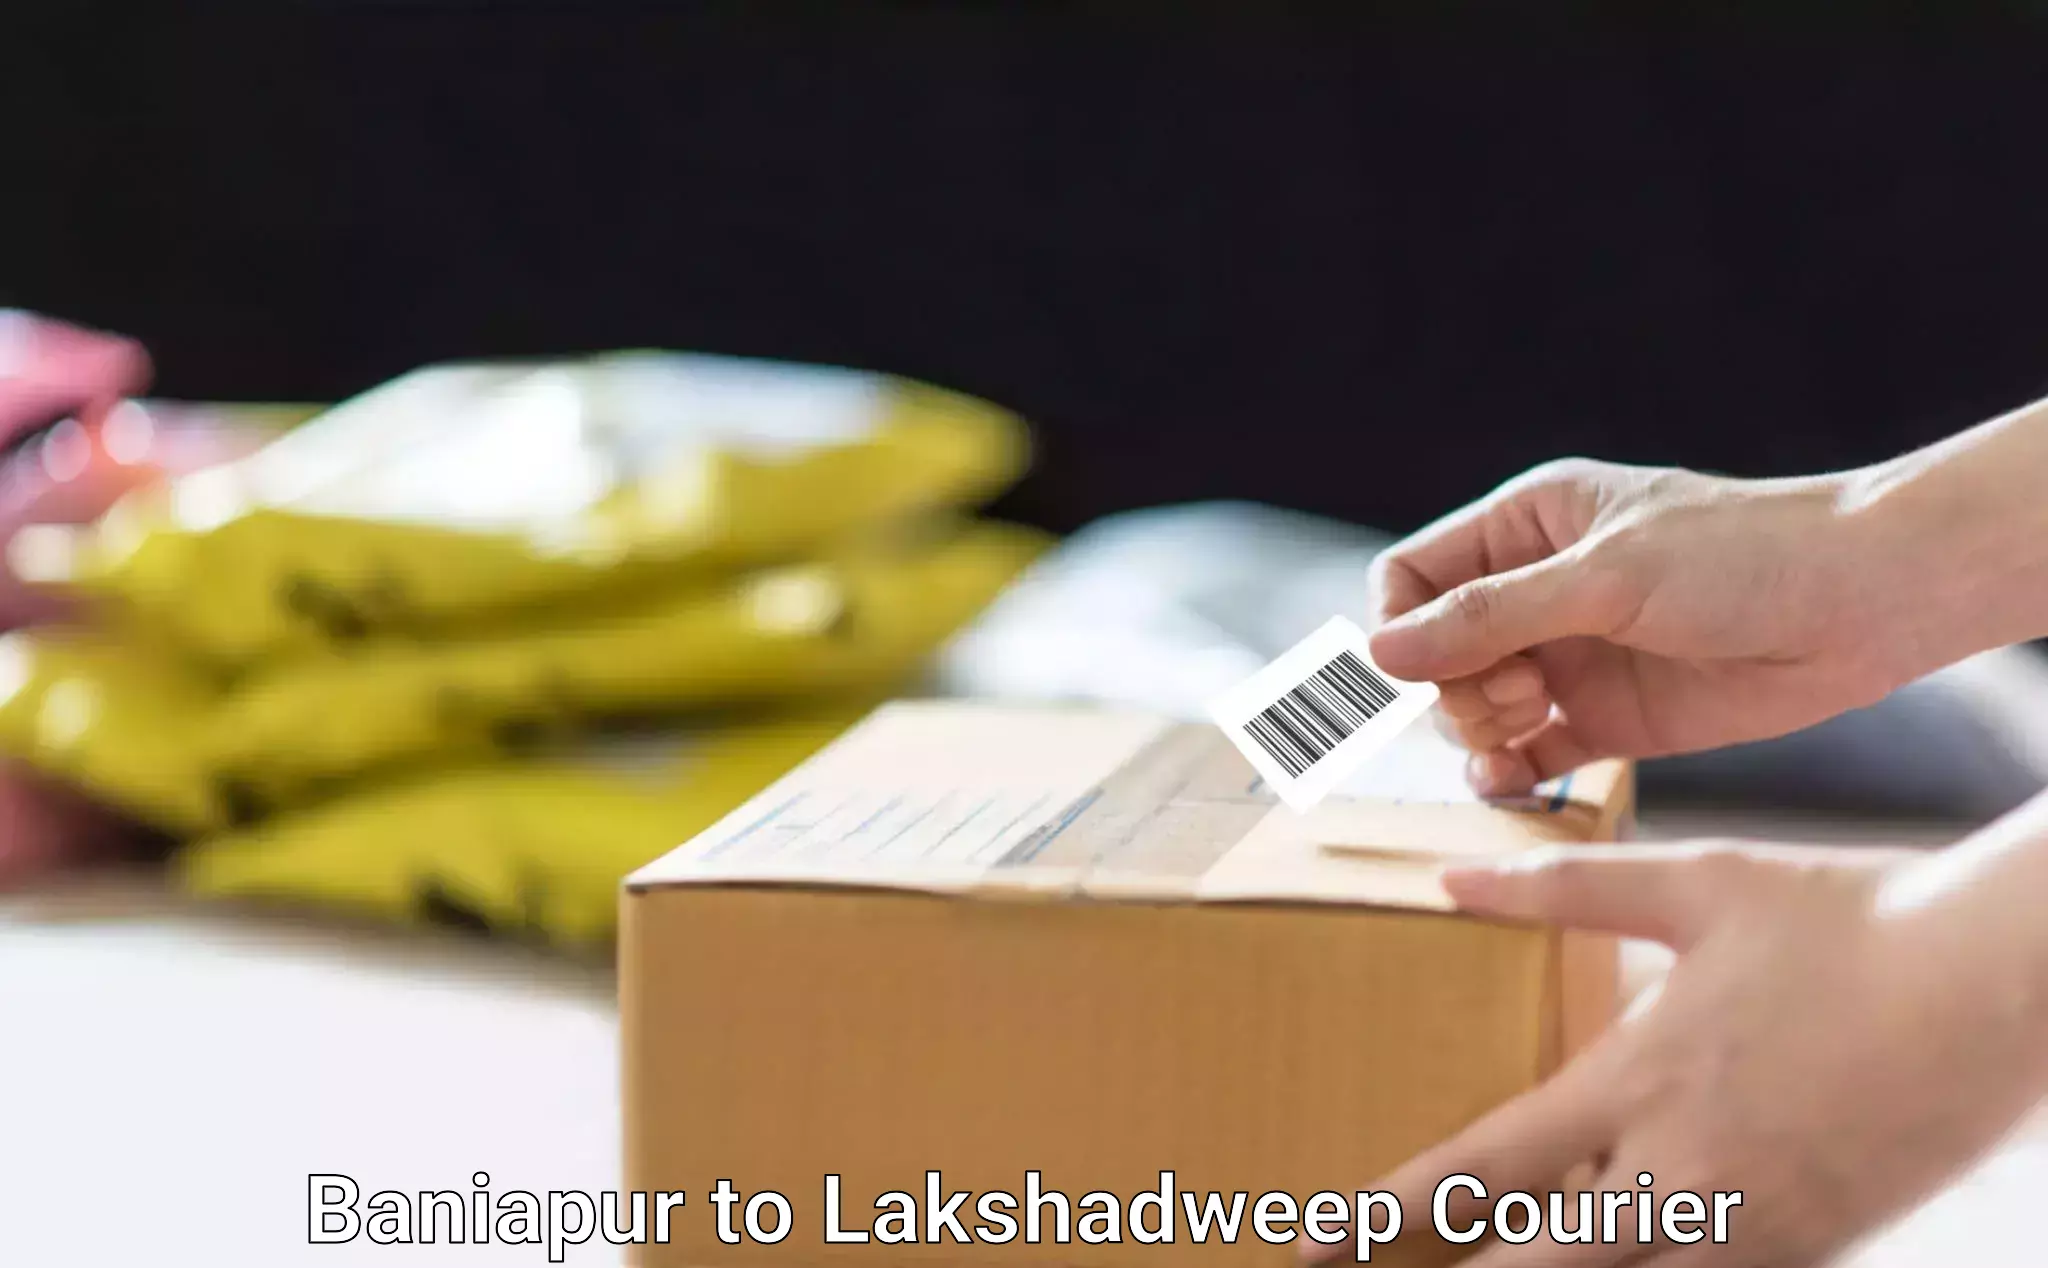 Professional furniture moving Baniapur to Lakshadweep